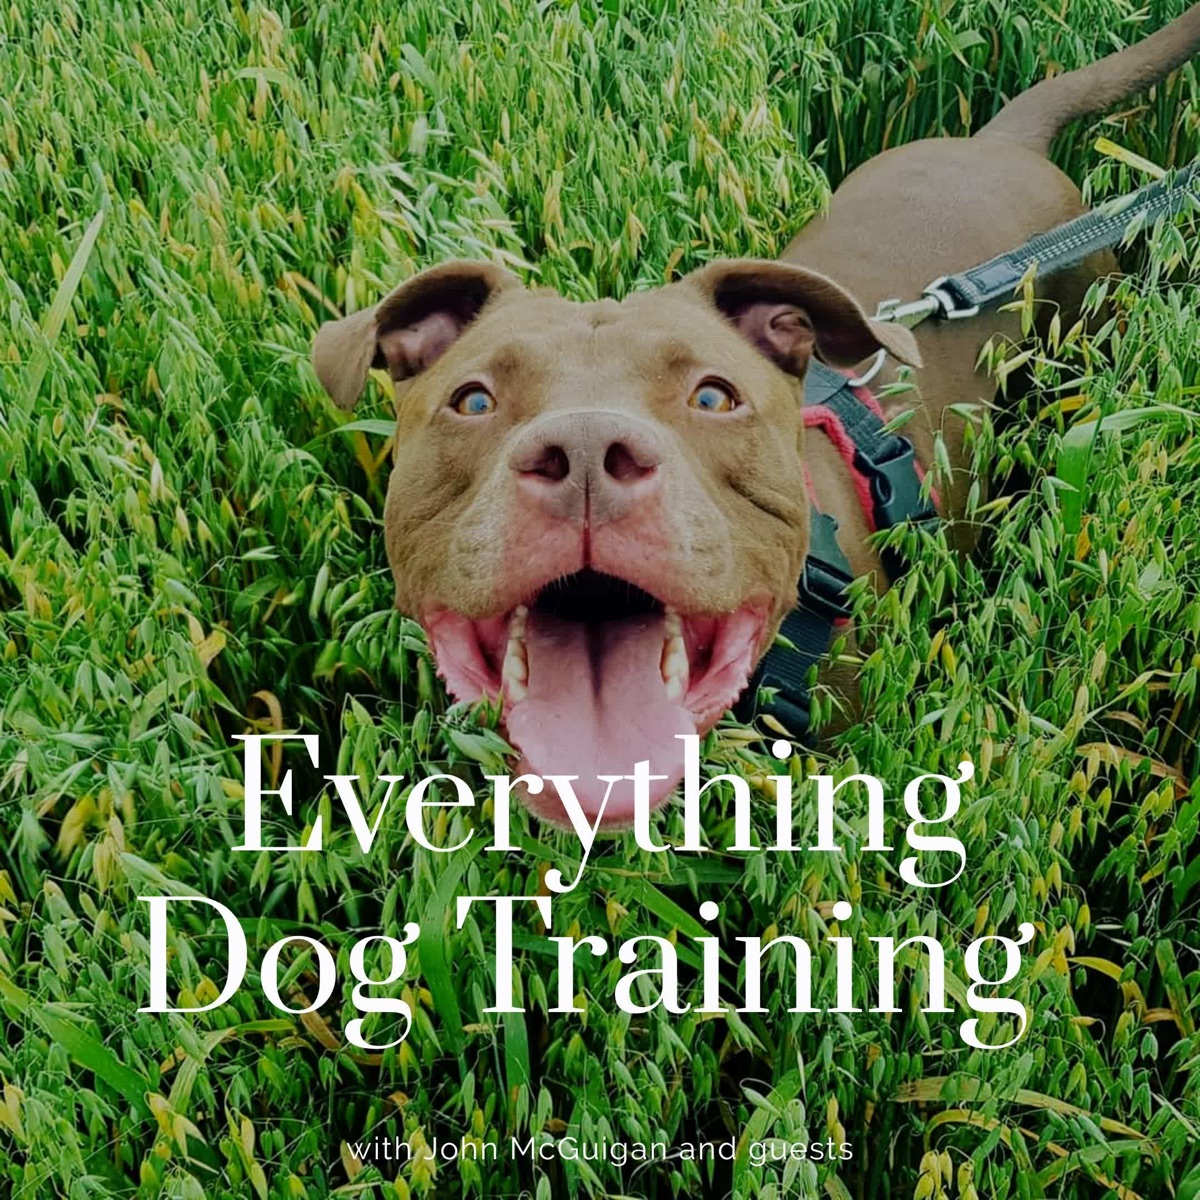 Everything Dog Training!